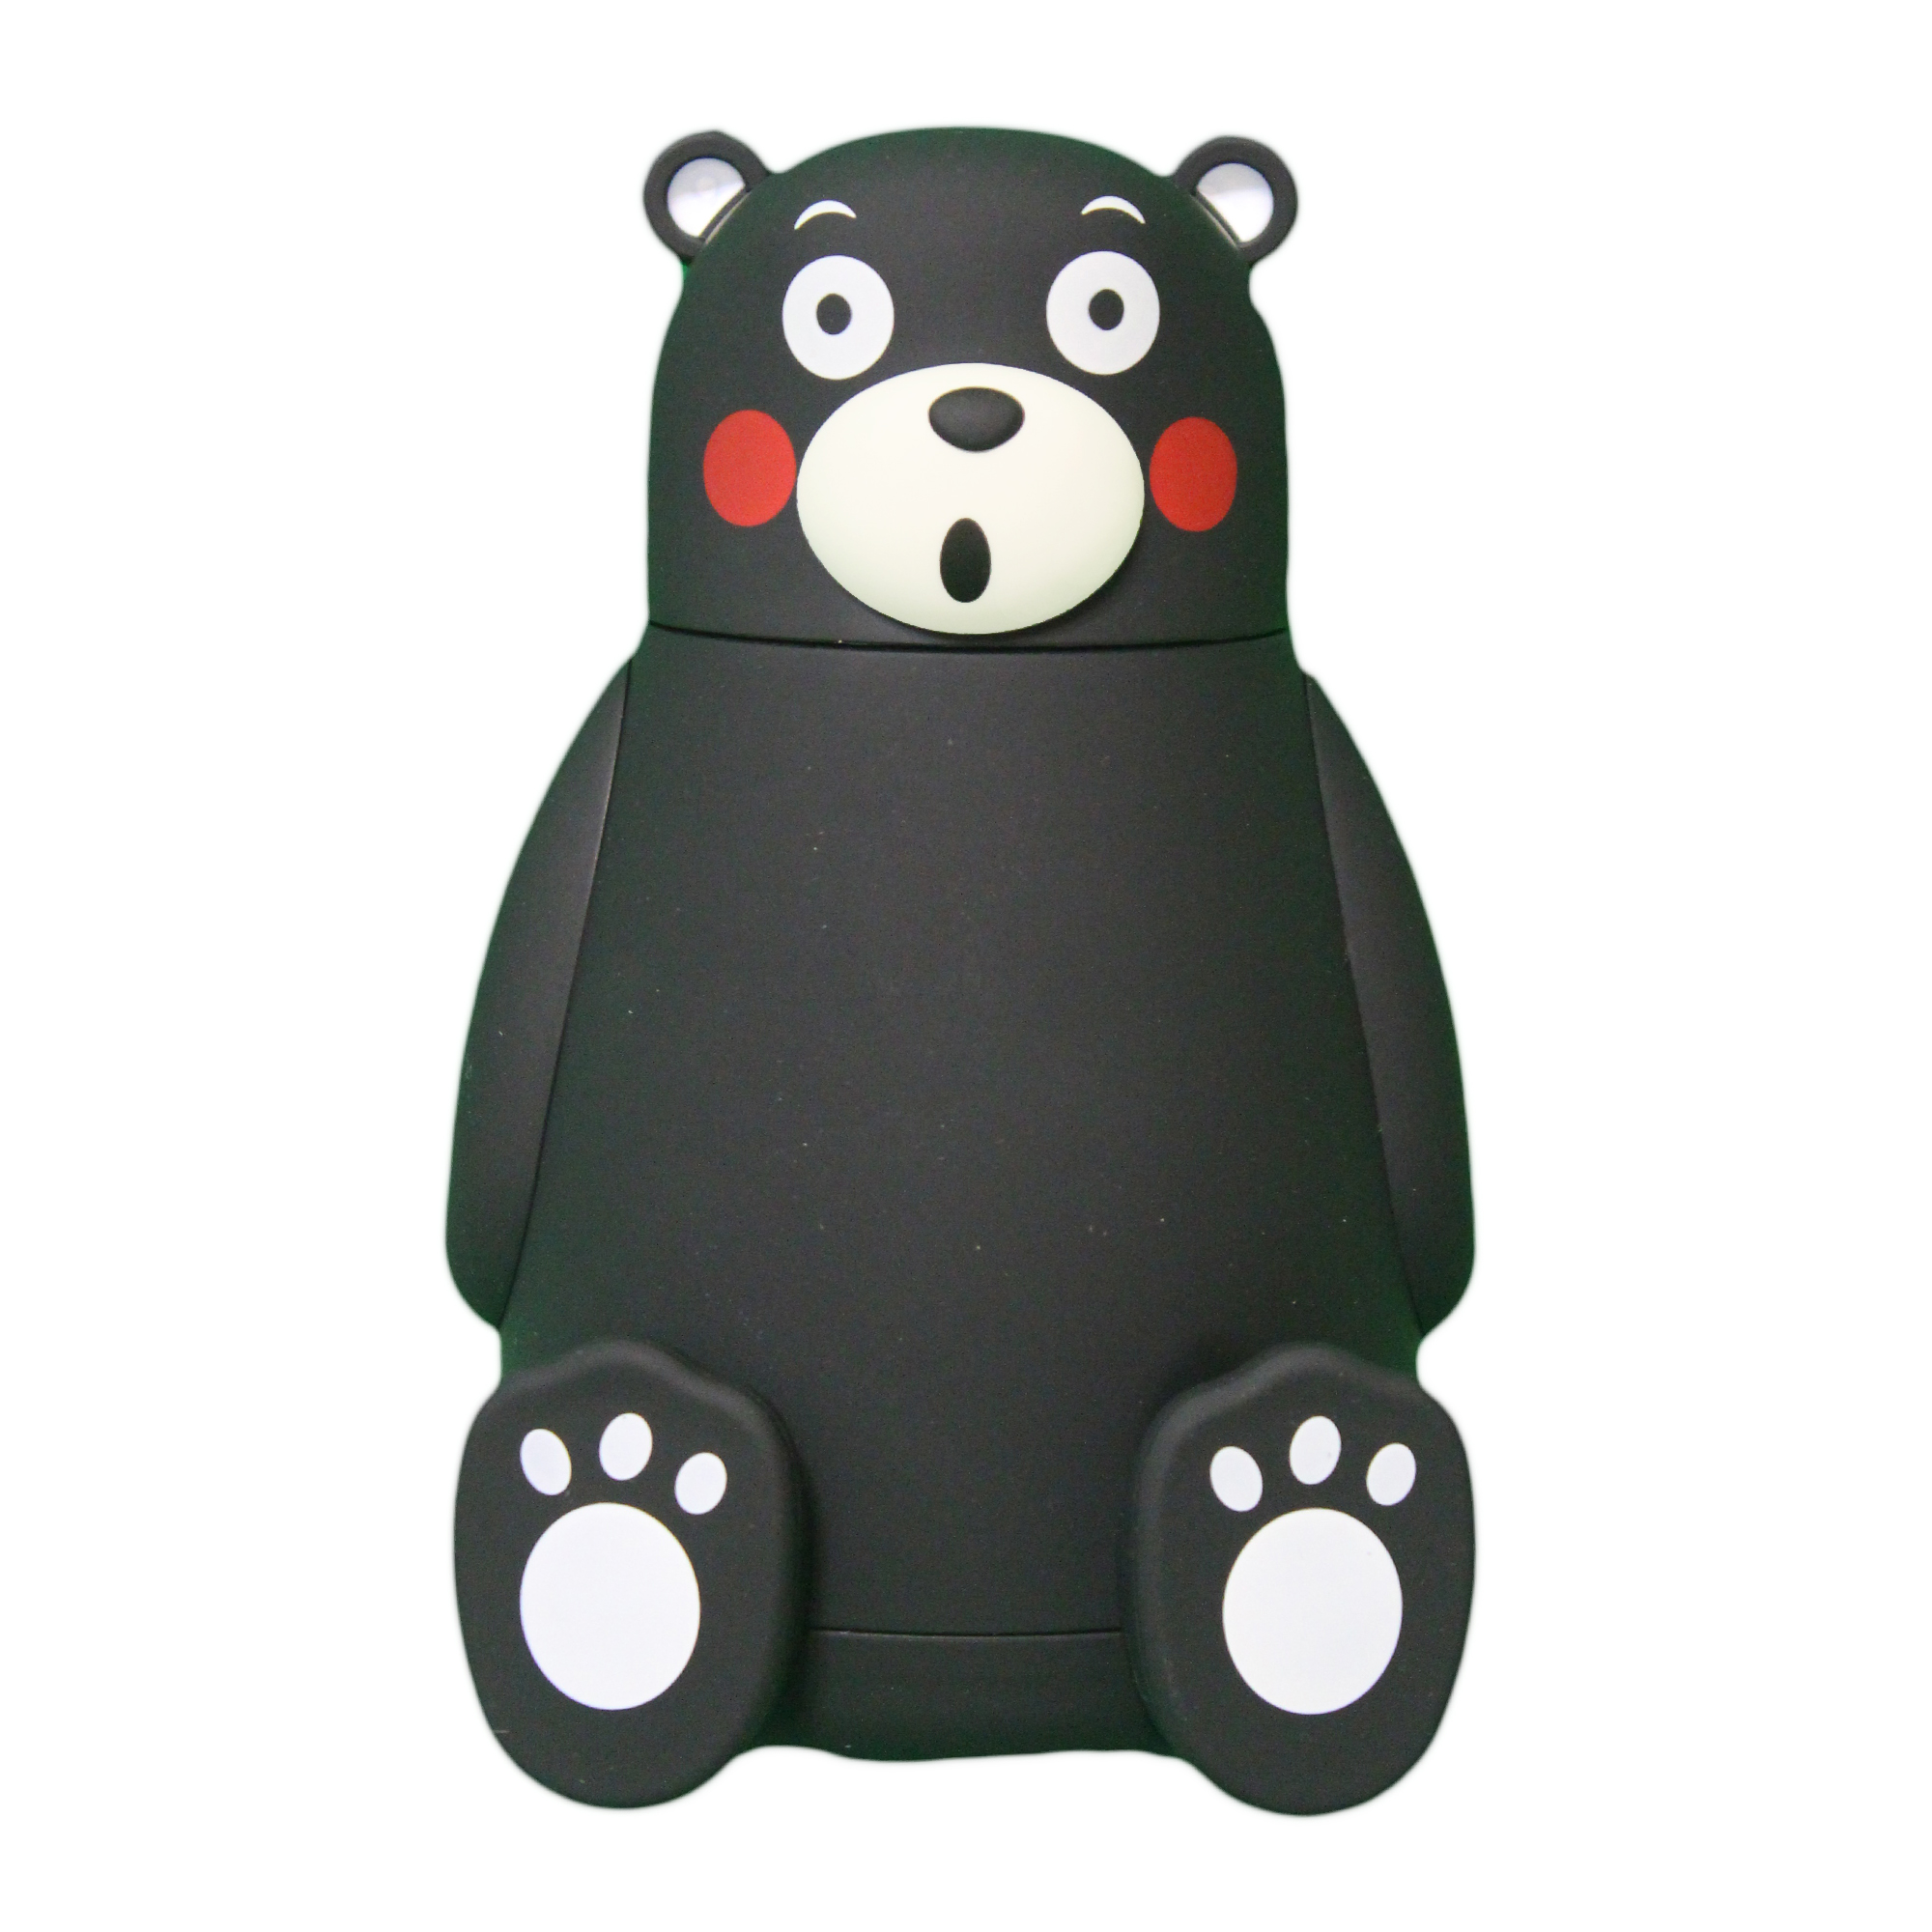 فلاکس کودک طرح خرس مدل BI-FL-NE گنجایش 0.28 لیتر